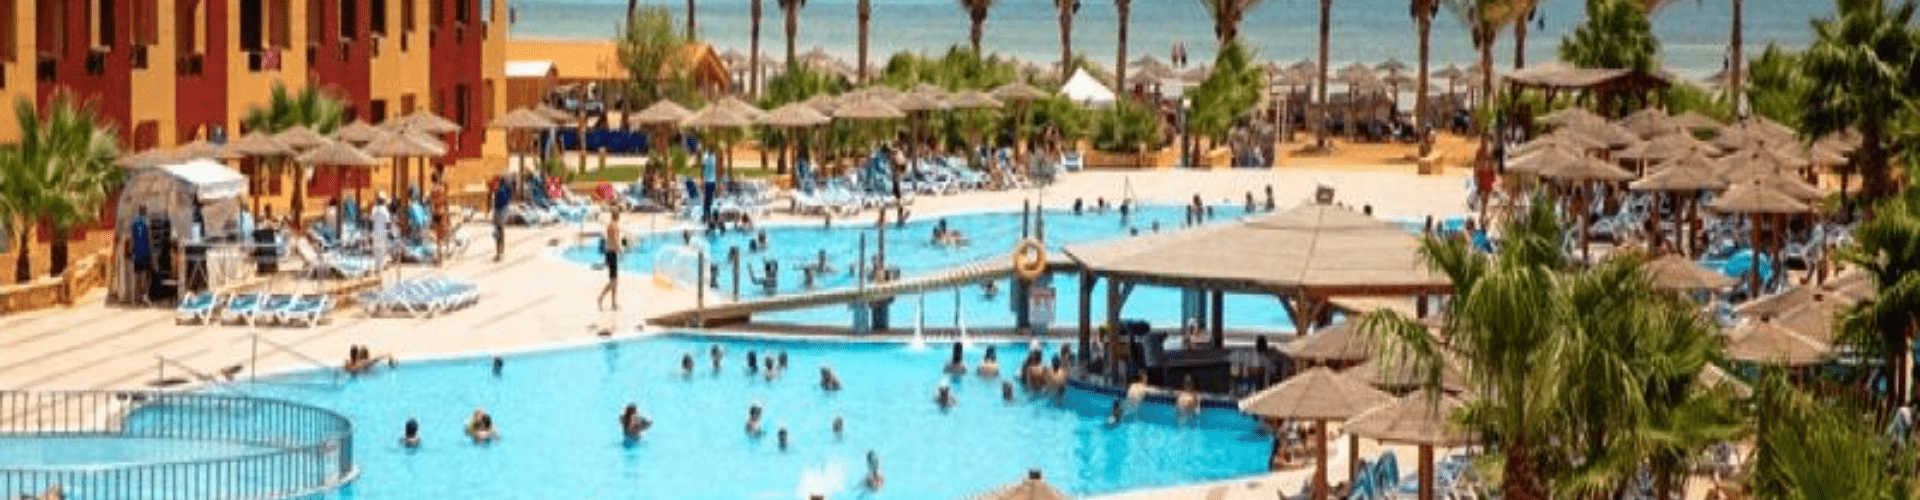 Royal Tulip Beach Resort - spoljašnji bazen